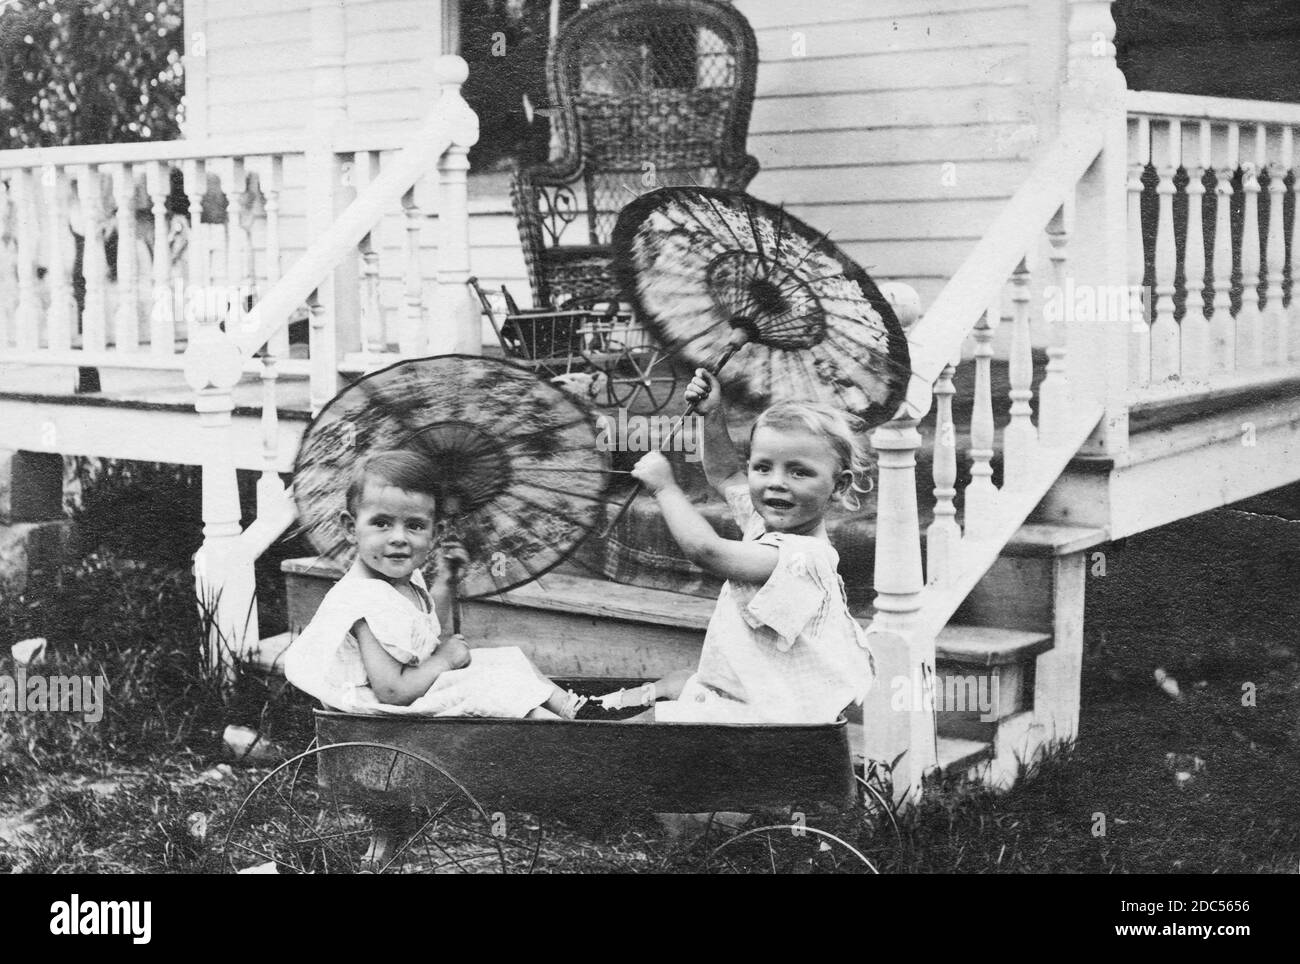 Deux jeunes enfants brillants, un garçon et une fille, brandisent des parasols fantaisie tout en étant assis dans un chariot à roulettes en métal à côté du porche avant de leur maison, environ 1906. Les deux enfants sont vêtus de robes blanches, qui était en fait normal pour les petits garçons du début des années 1900. Sur le porche se trouvent quelques autres jouets, partiellement obstrués, et un fauteuil en osier pour adultes. Pour voir mes enfants-liés des images vintage, recherche: Prestor vintage Kids Banque D'Images